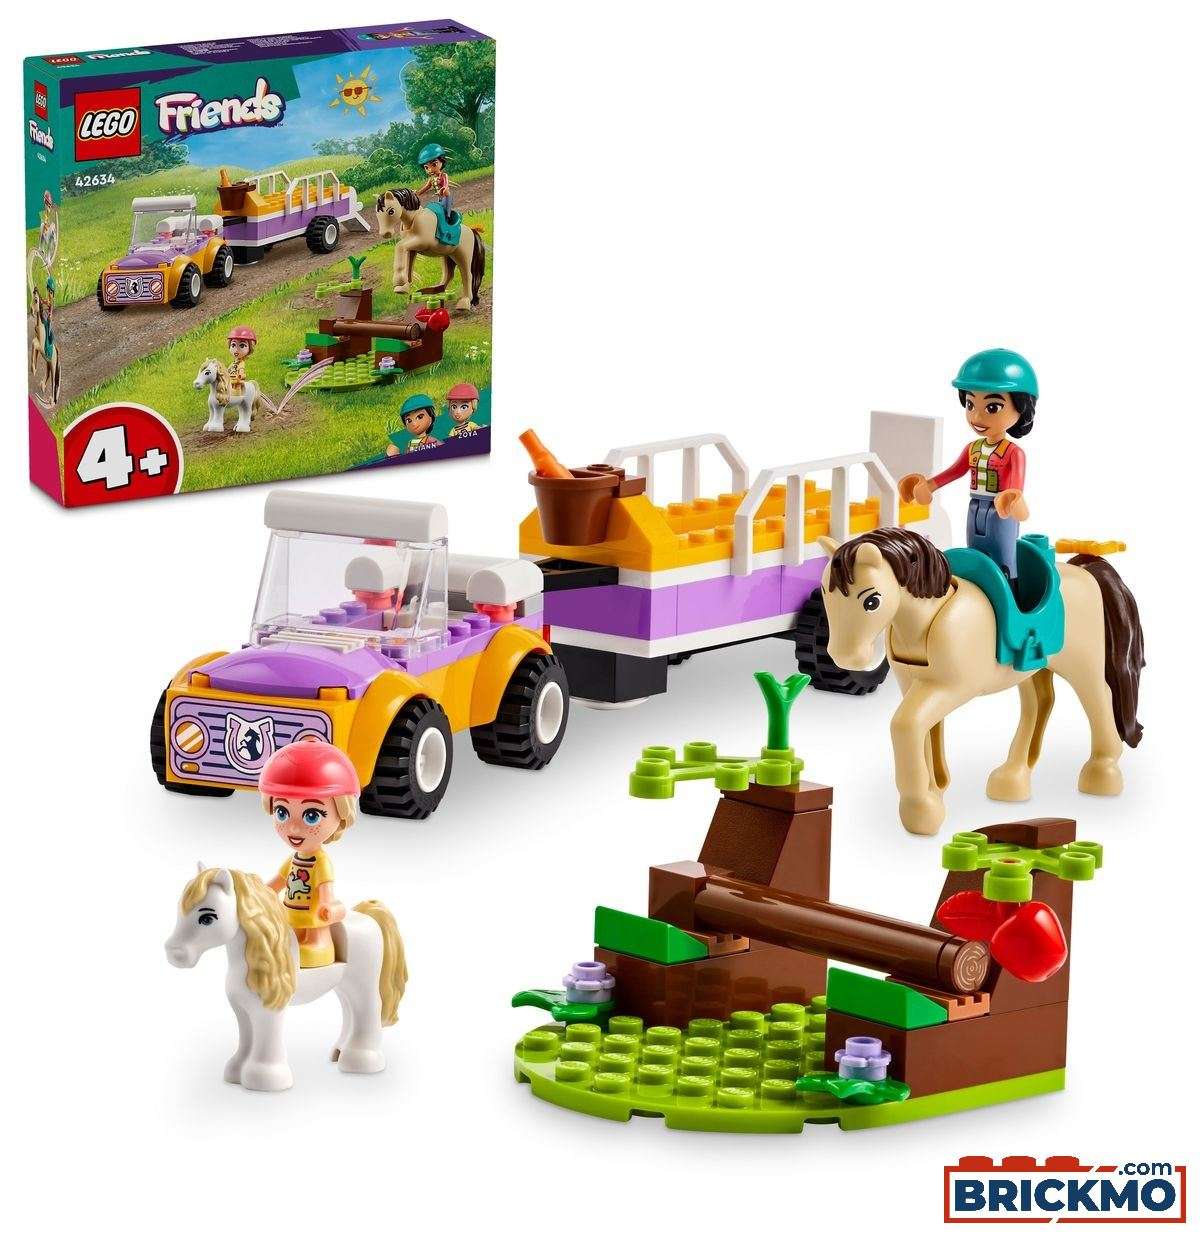 LEGO Friends 42634 Remolque para Caballo y Poni 42634